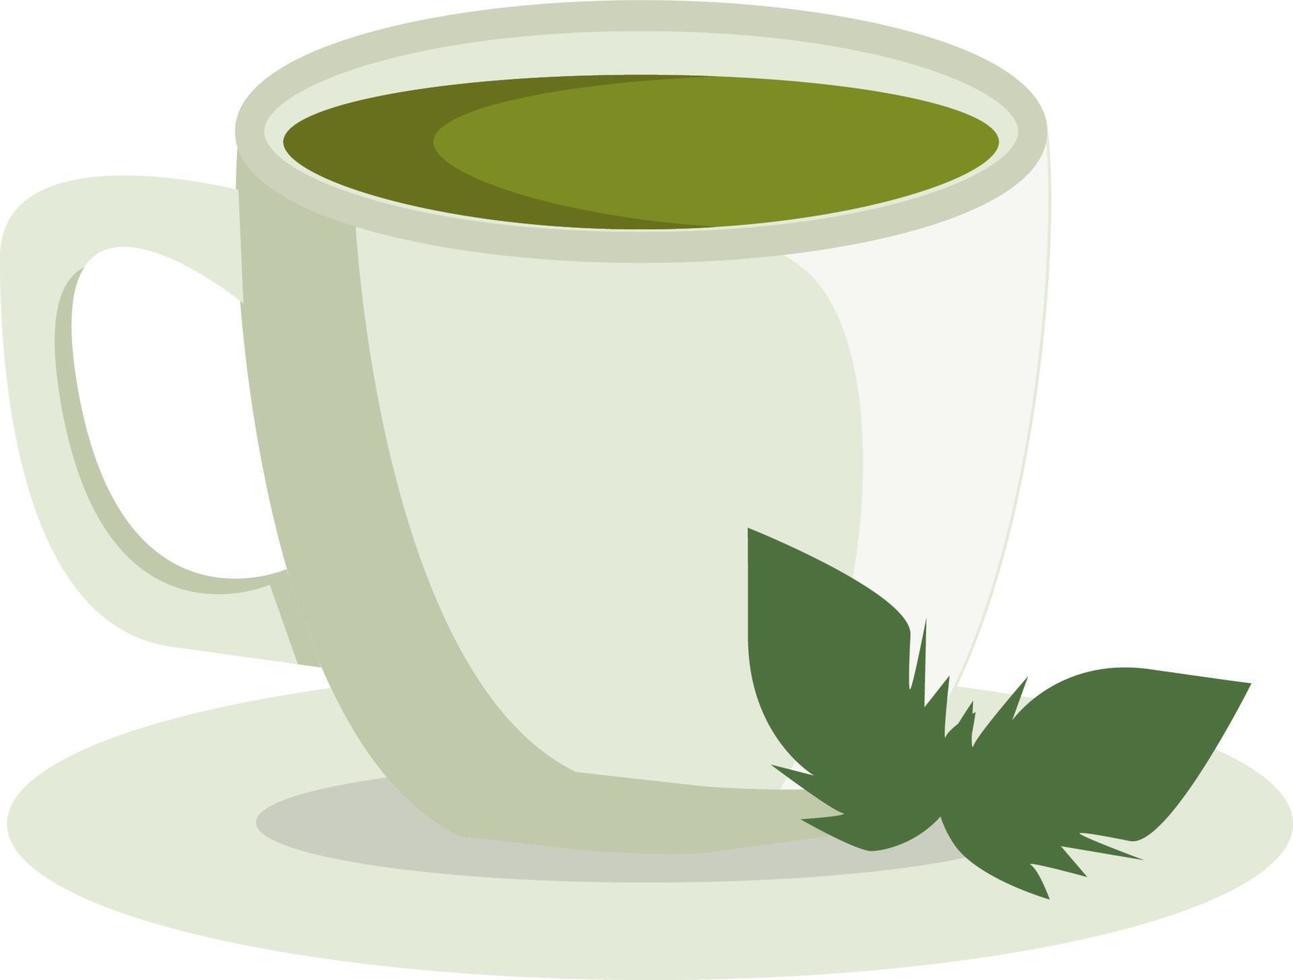 una taza de té verde, vector o ilustración en color.